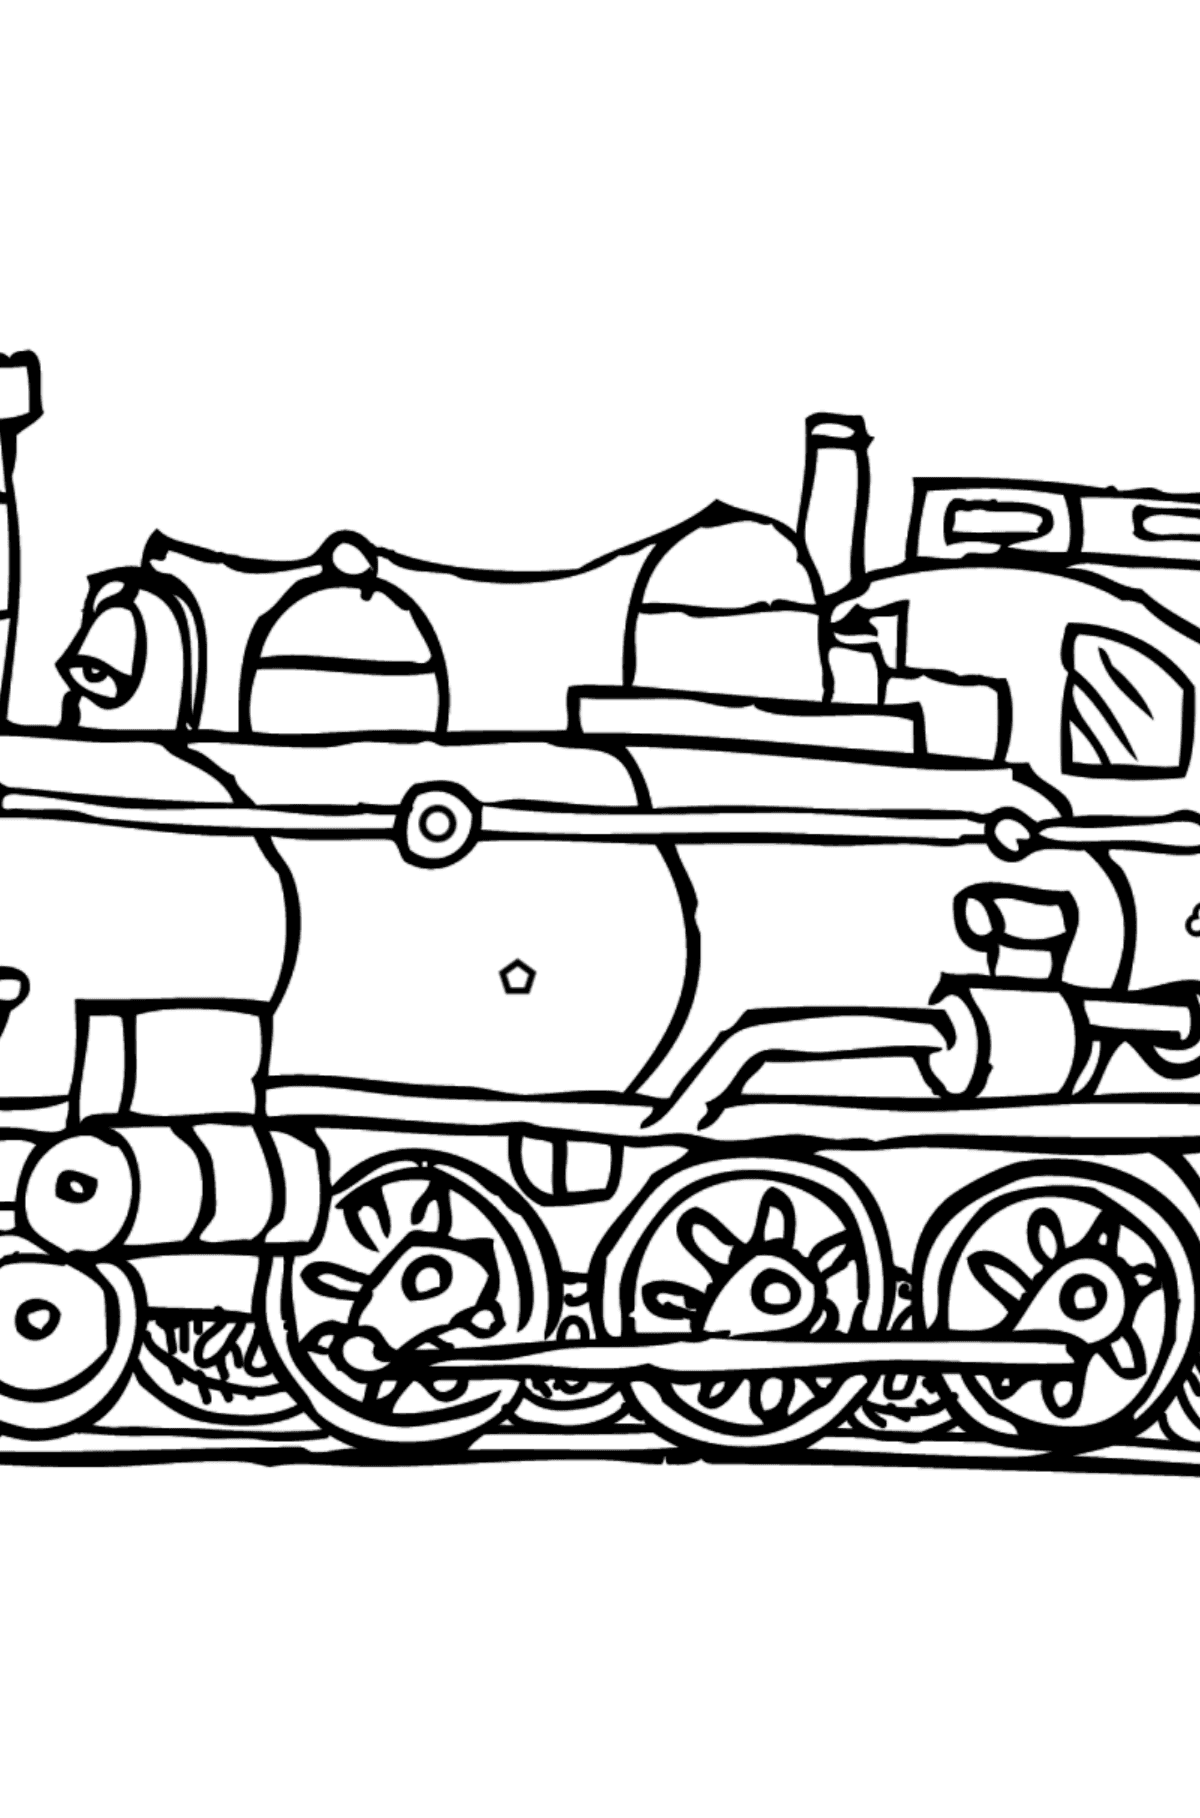 Desenho de Locomotiva para colorir - Colorir por Formas Geométricas para Crianças